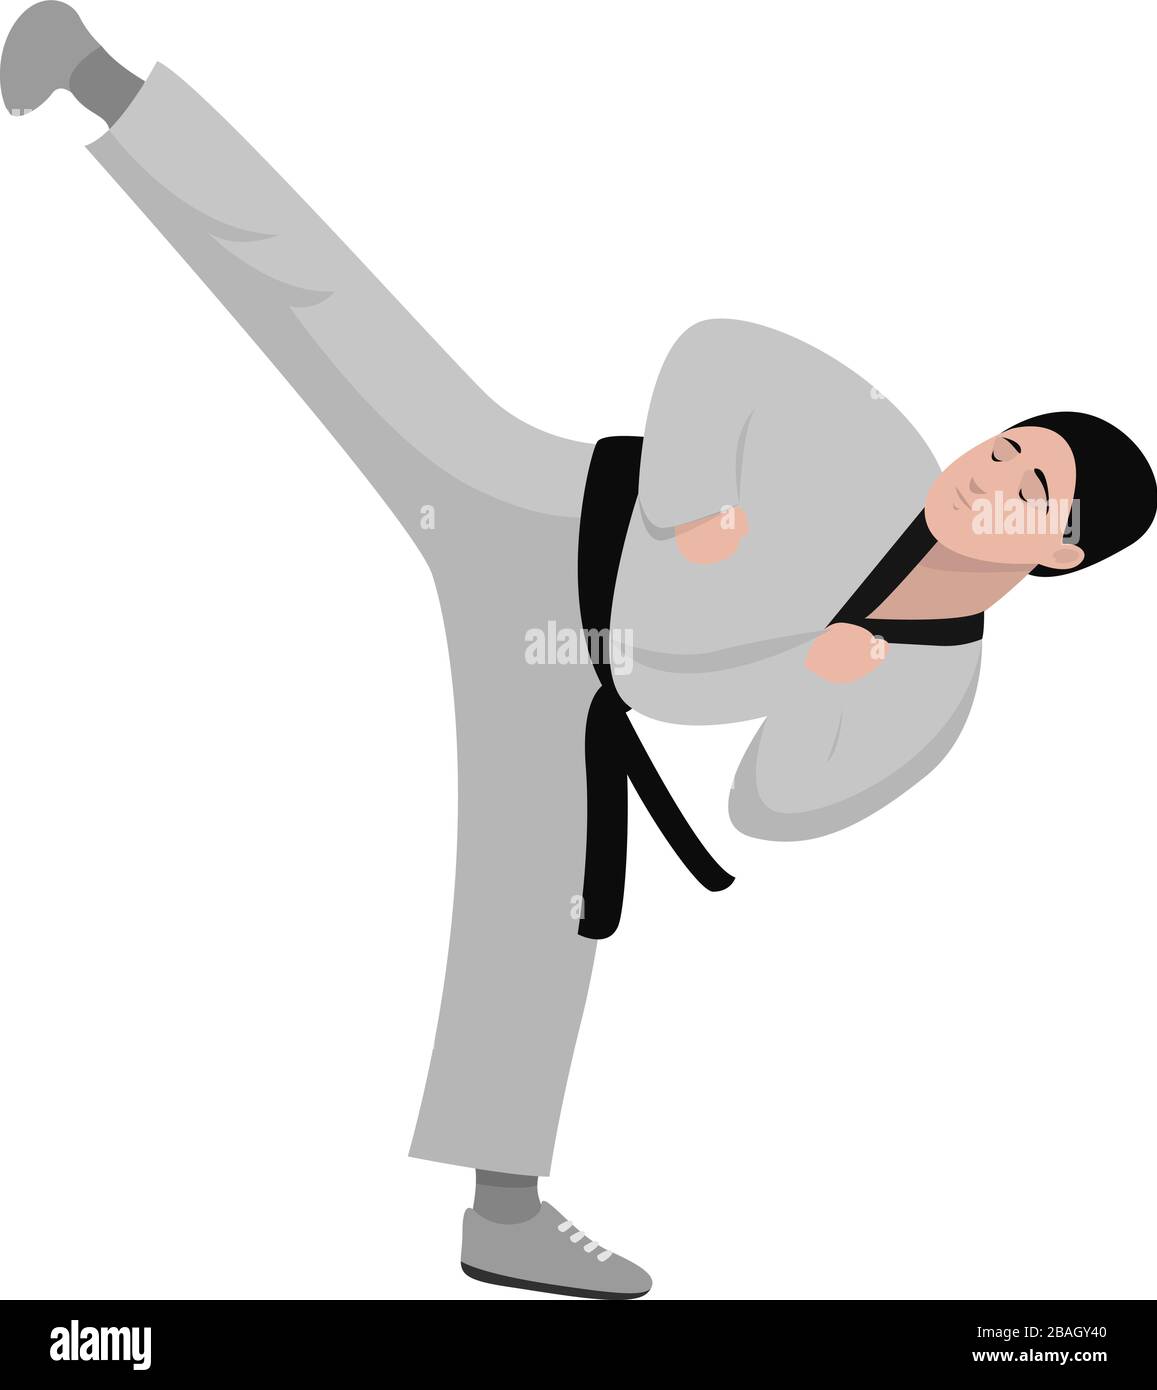 karate kid background